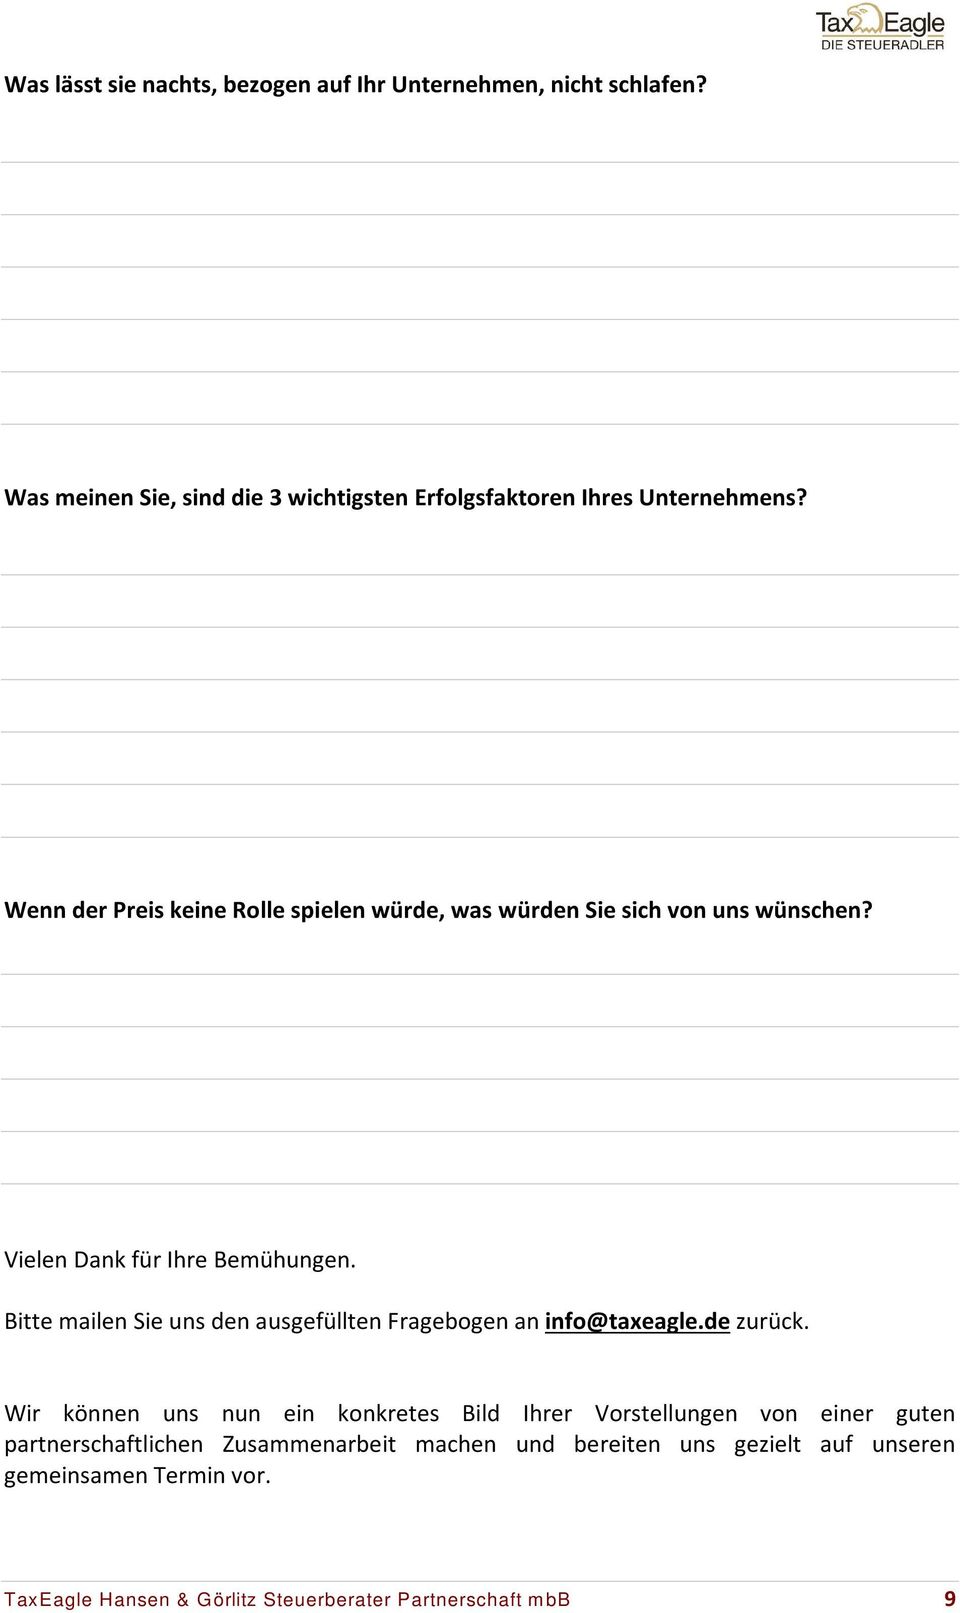 Bitte mailen Sie uns den ausgefüllten Fragebogen an info@taxeagle.de zurück.